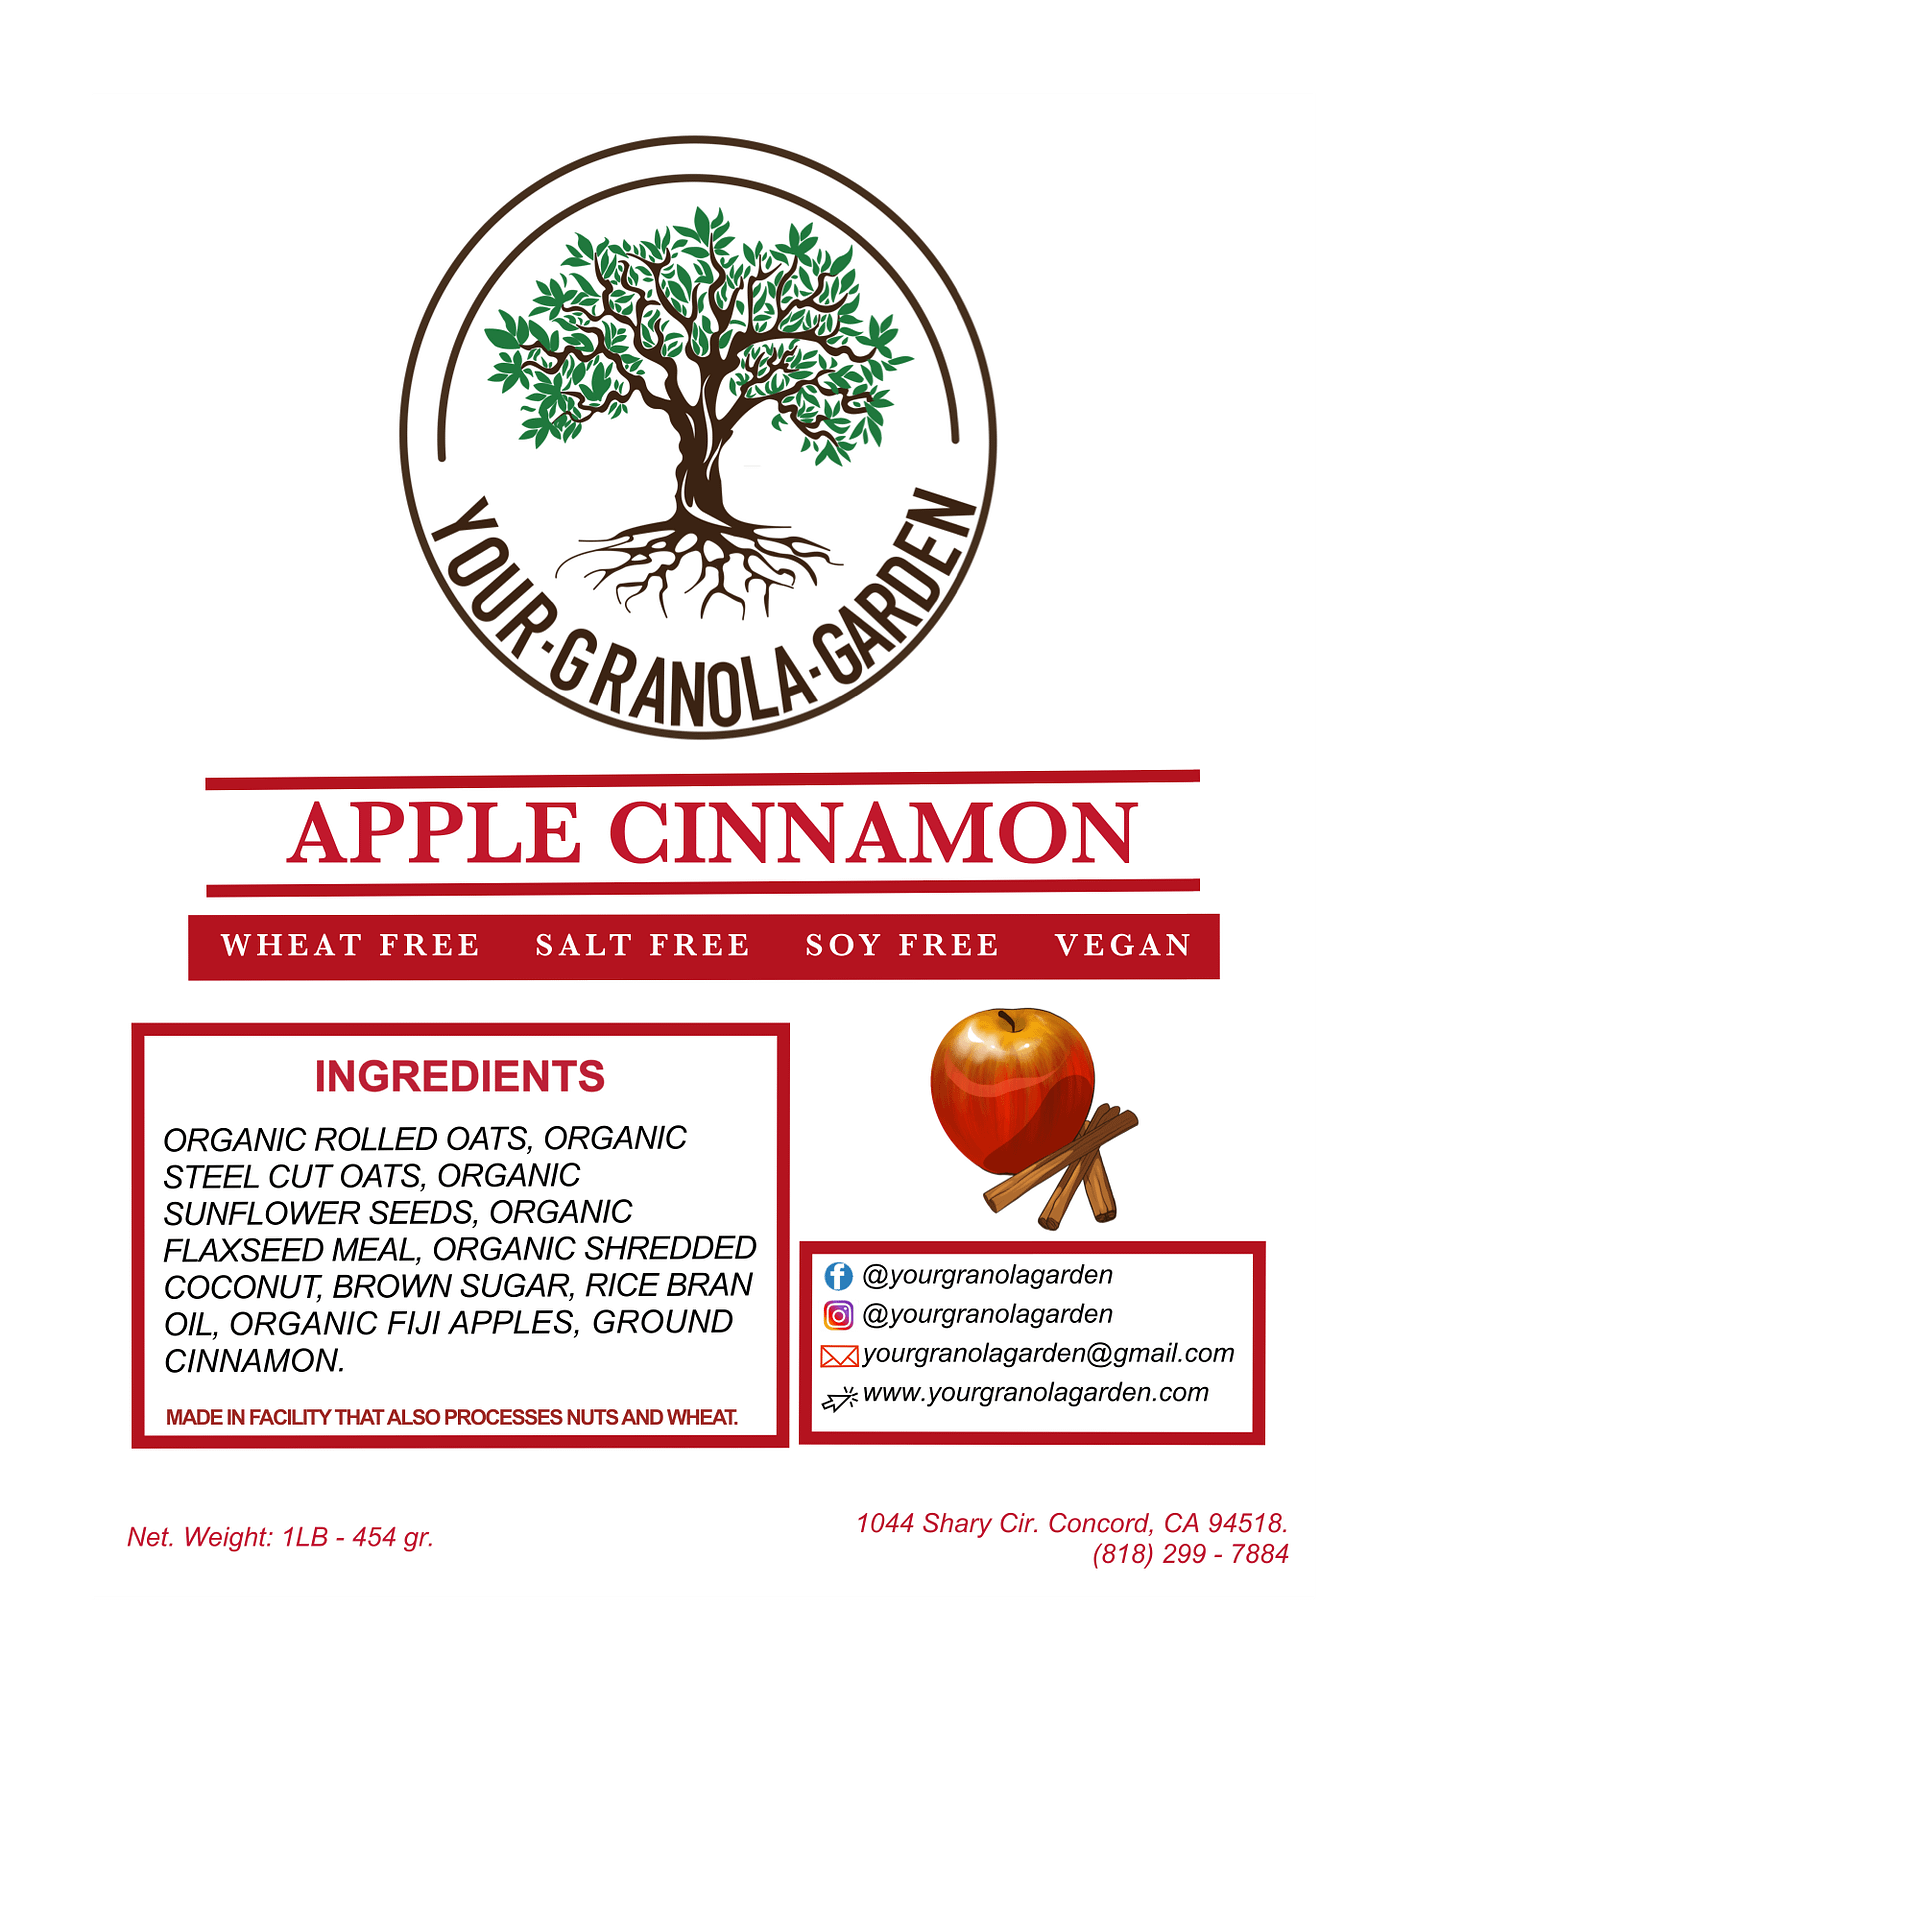 Your Granola Garden - Apple Cinnamon Ingredients